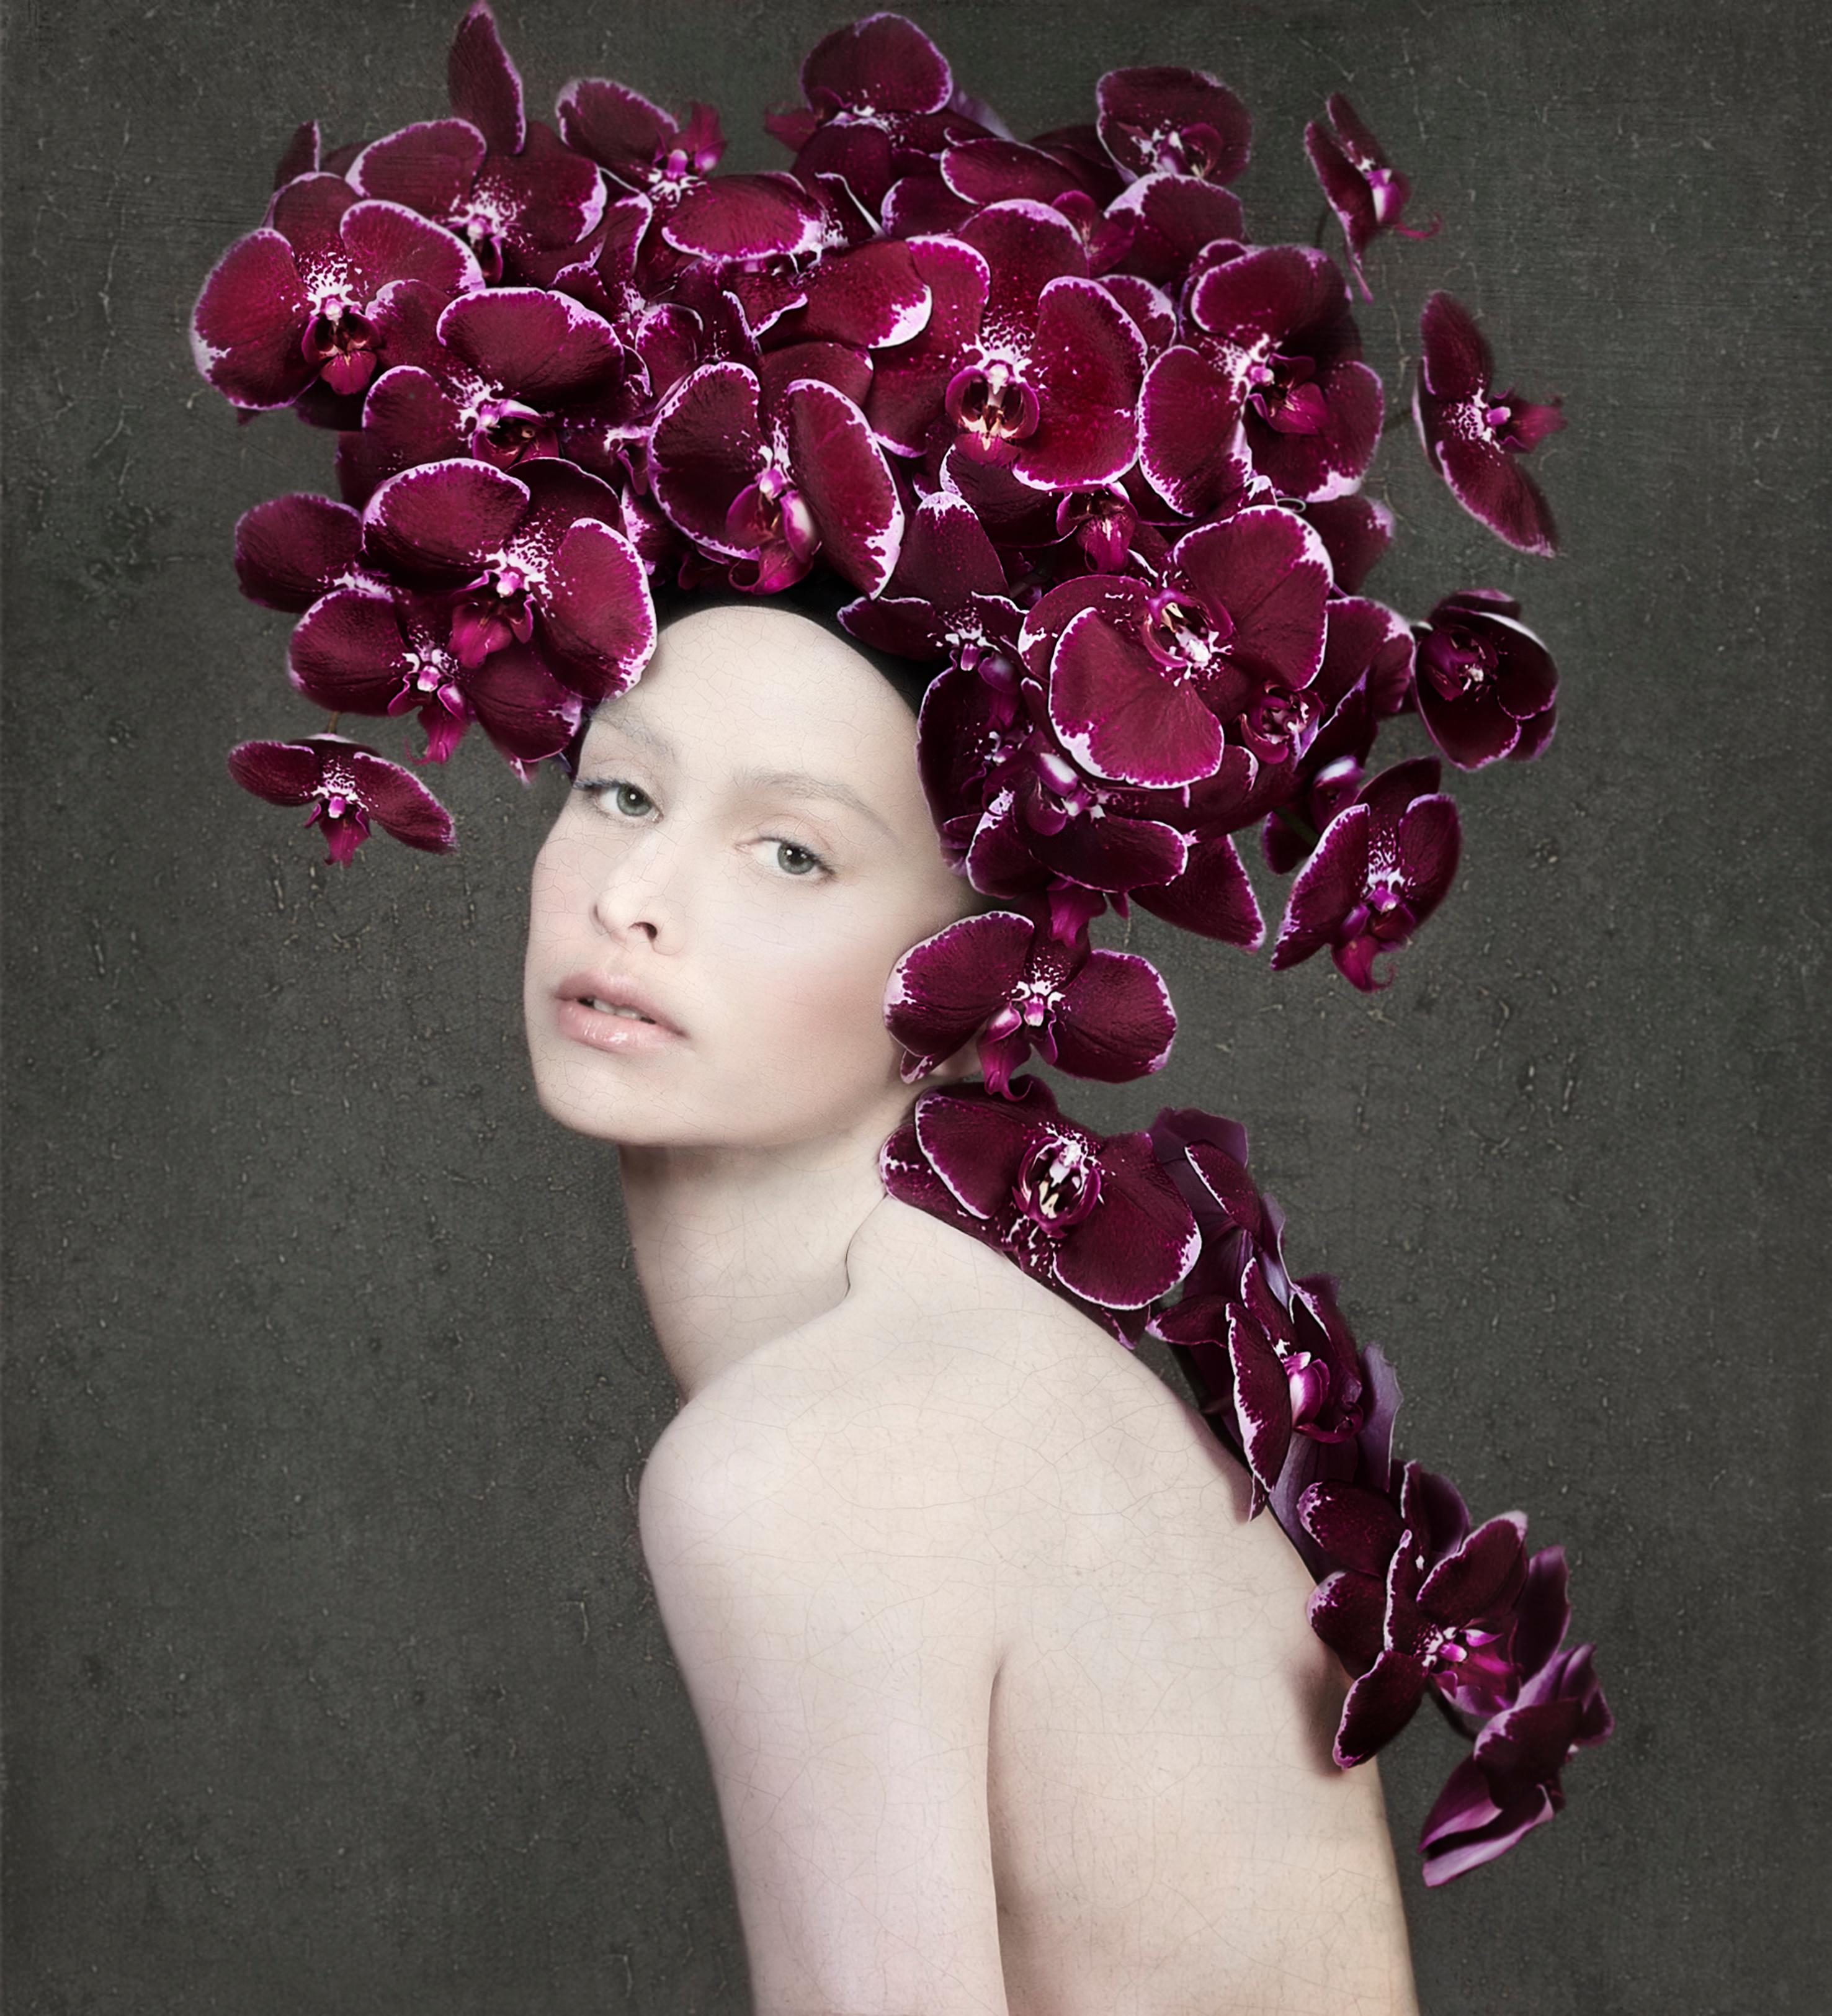 Isabelle Van Zeijl Color Photograph - The New Me